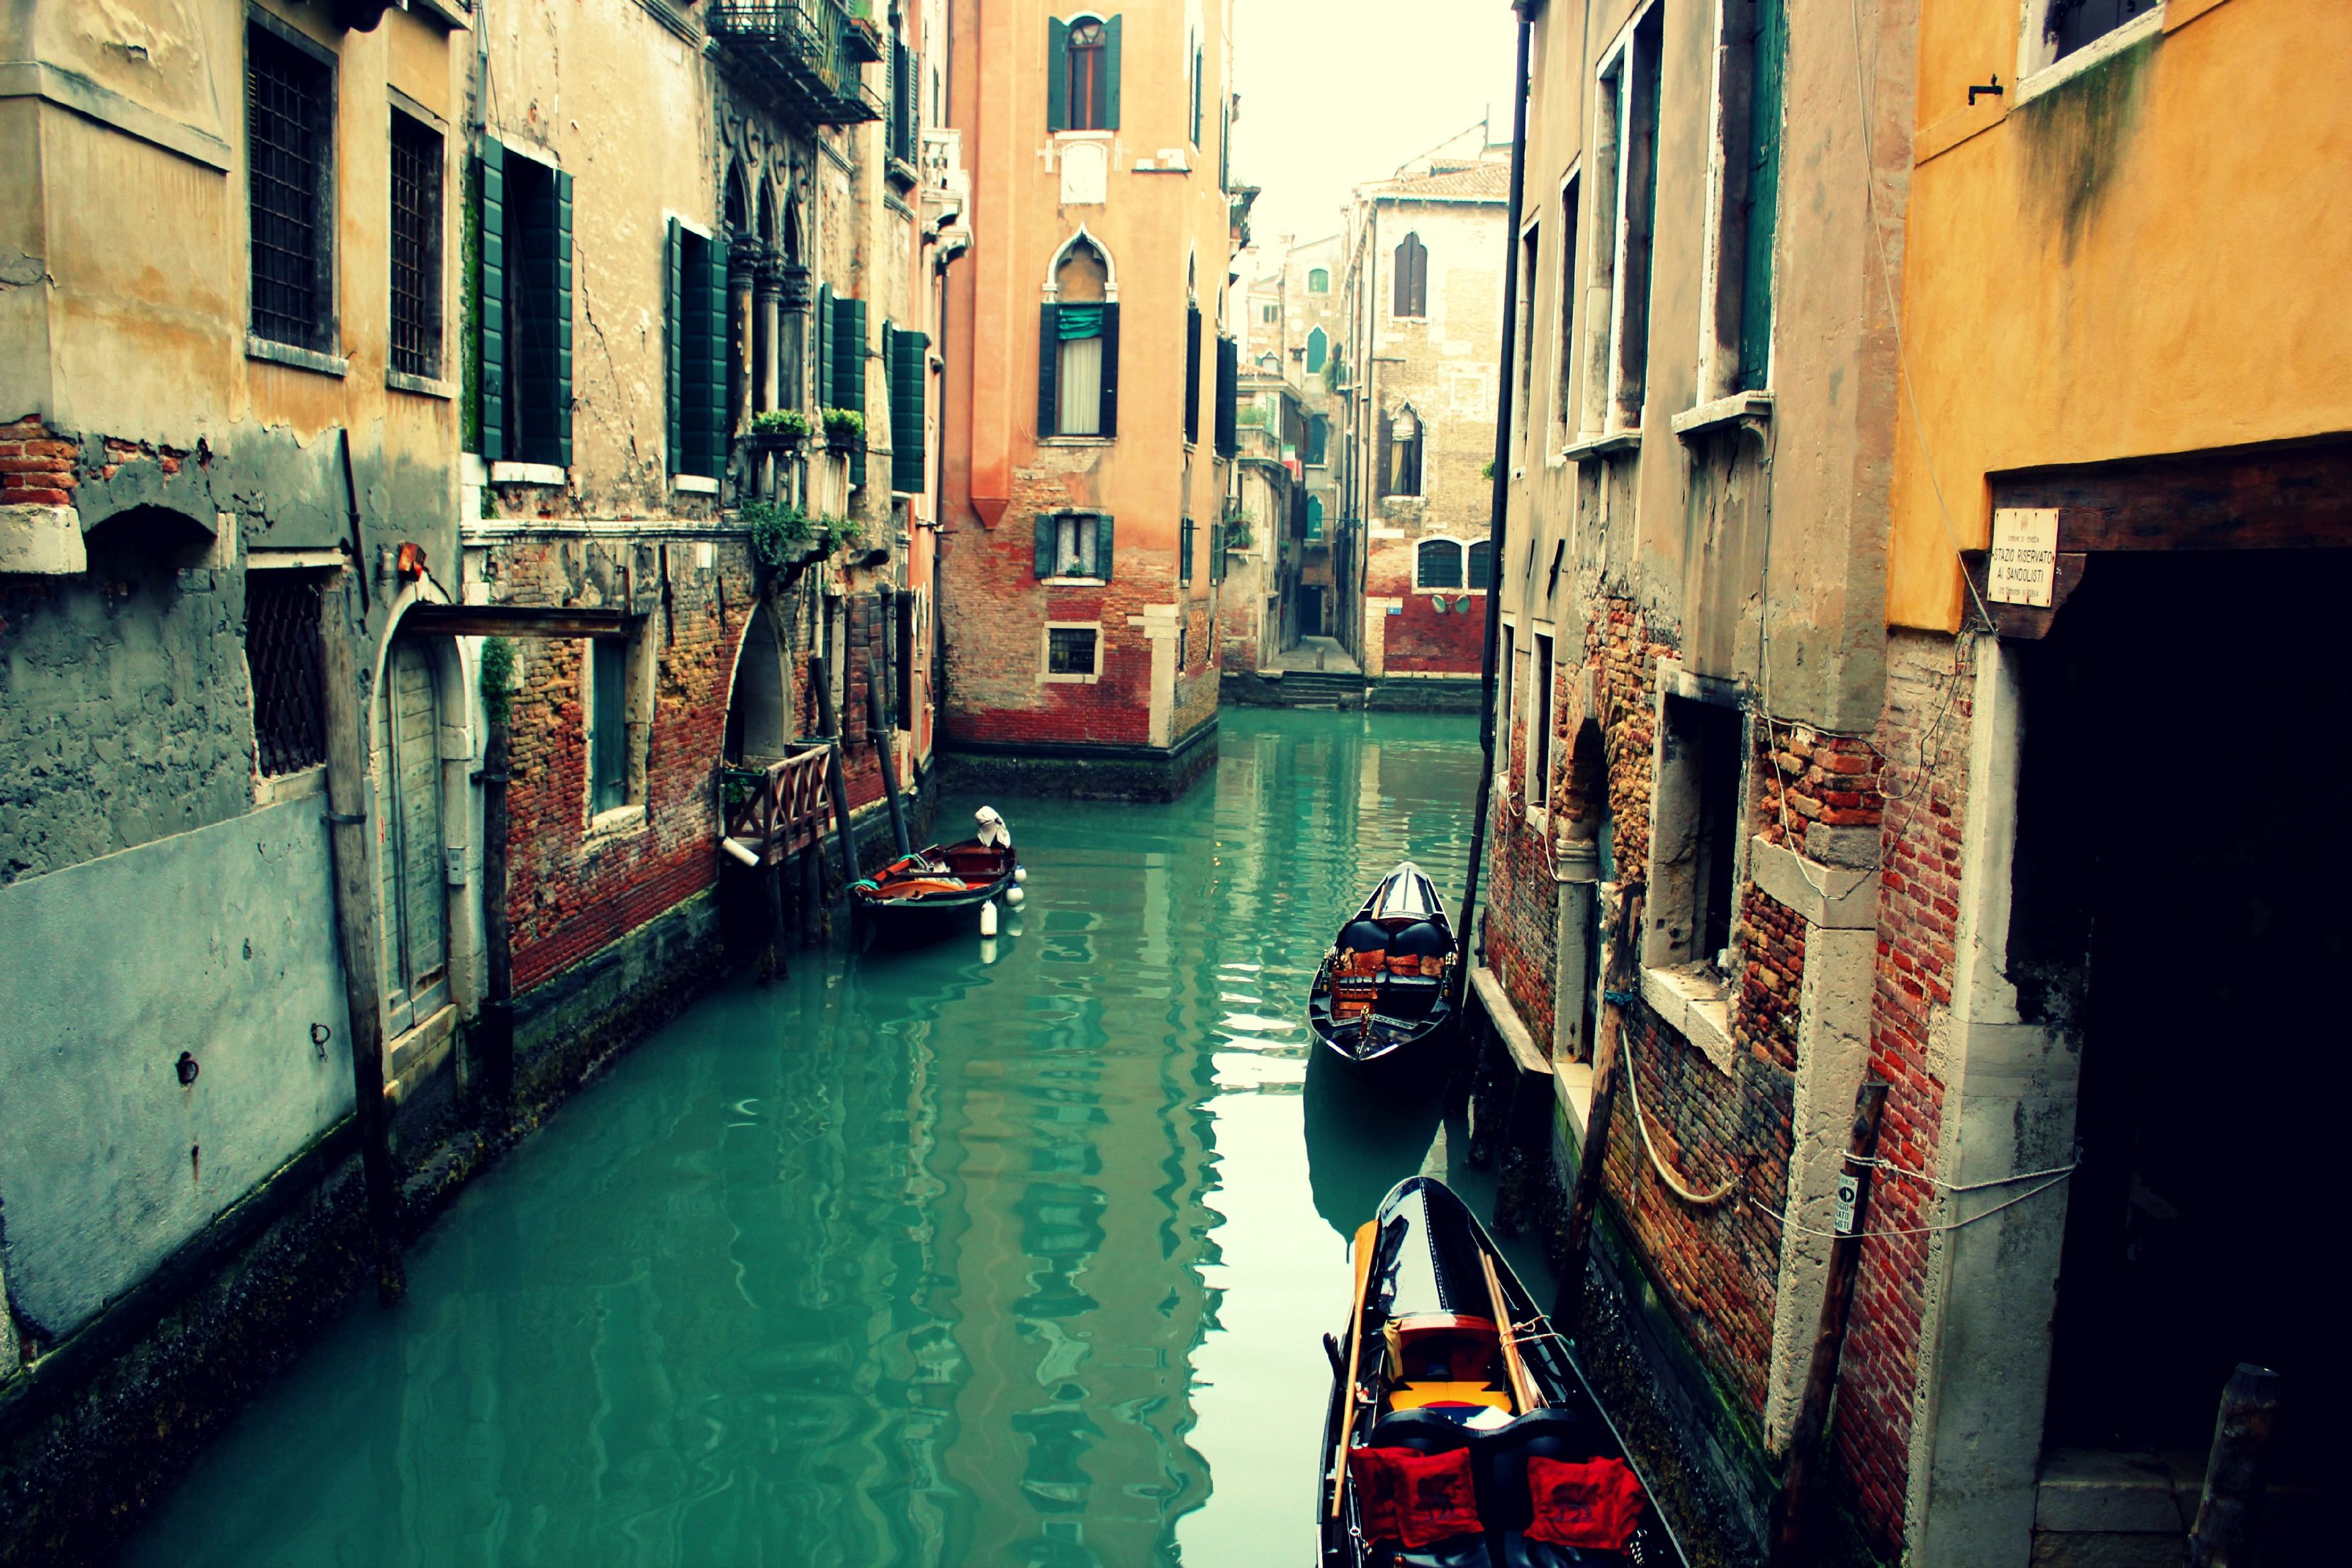 Streets of Venice HD desktop wallpaper Widescreen High | Wallpapers ...